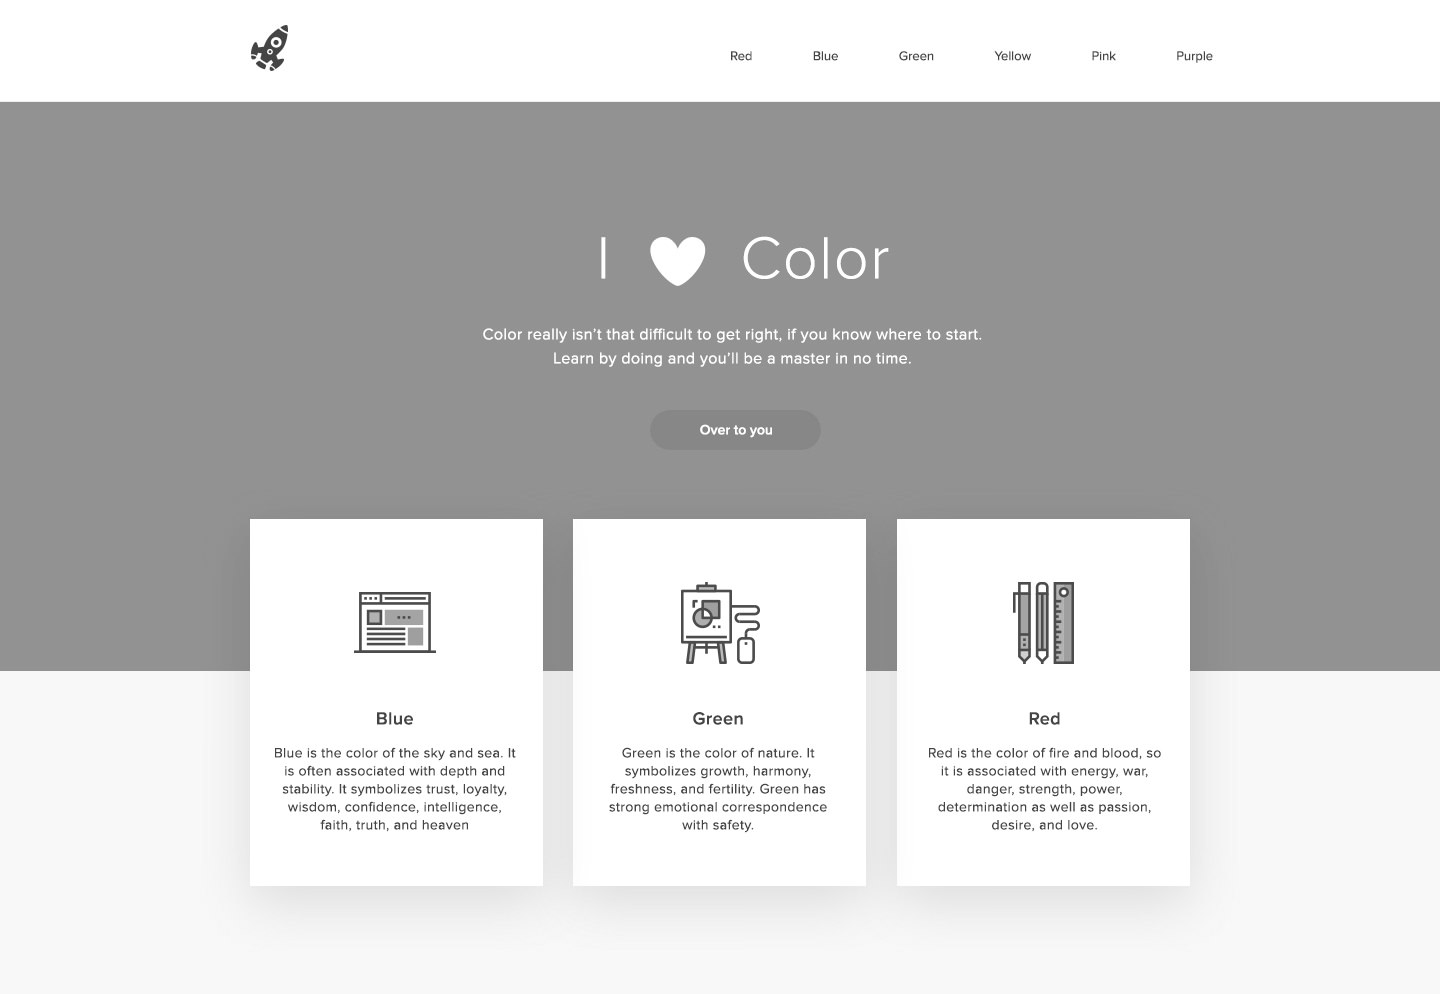 Màu sắc cho lập trình viên web: Chắc chắn bạn đang tìm kiếm các màu sắc phù hợp để thiết kế trang web của mình phải không? Đừng bỏ qua danh sách màu sắc cho lập trình viên web để tìm ra mong đợi cho dự án của bạn. Điều này sẽ giúp bạn tạo nên một trang web tuyệt đẹp, tối ưu hóa trải nghiệm người dùng.